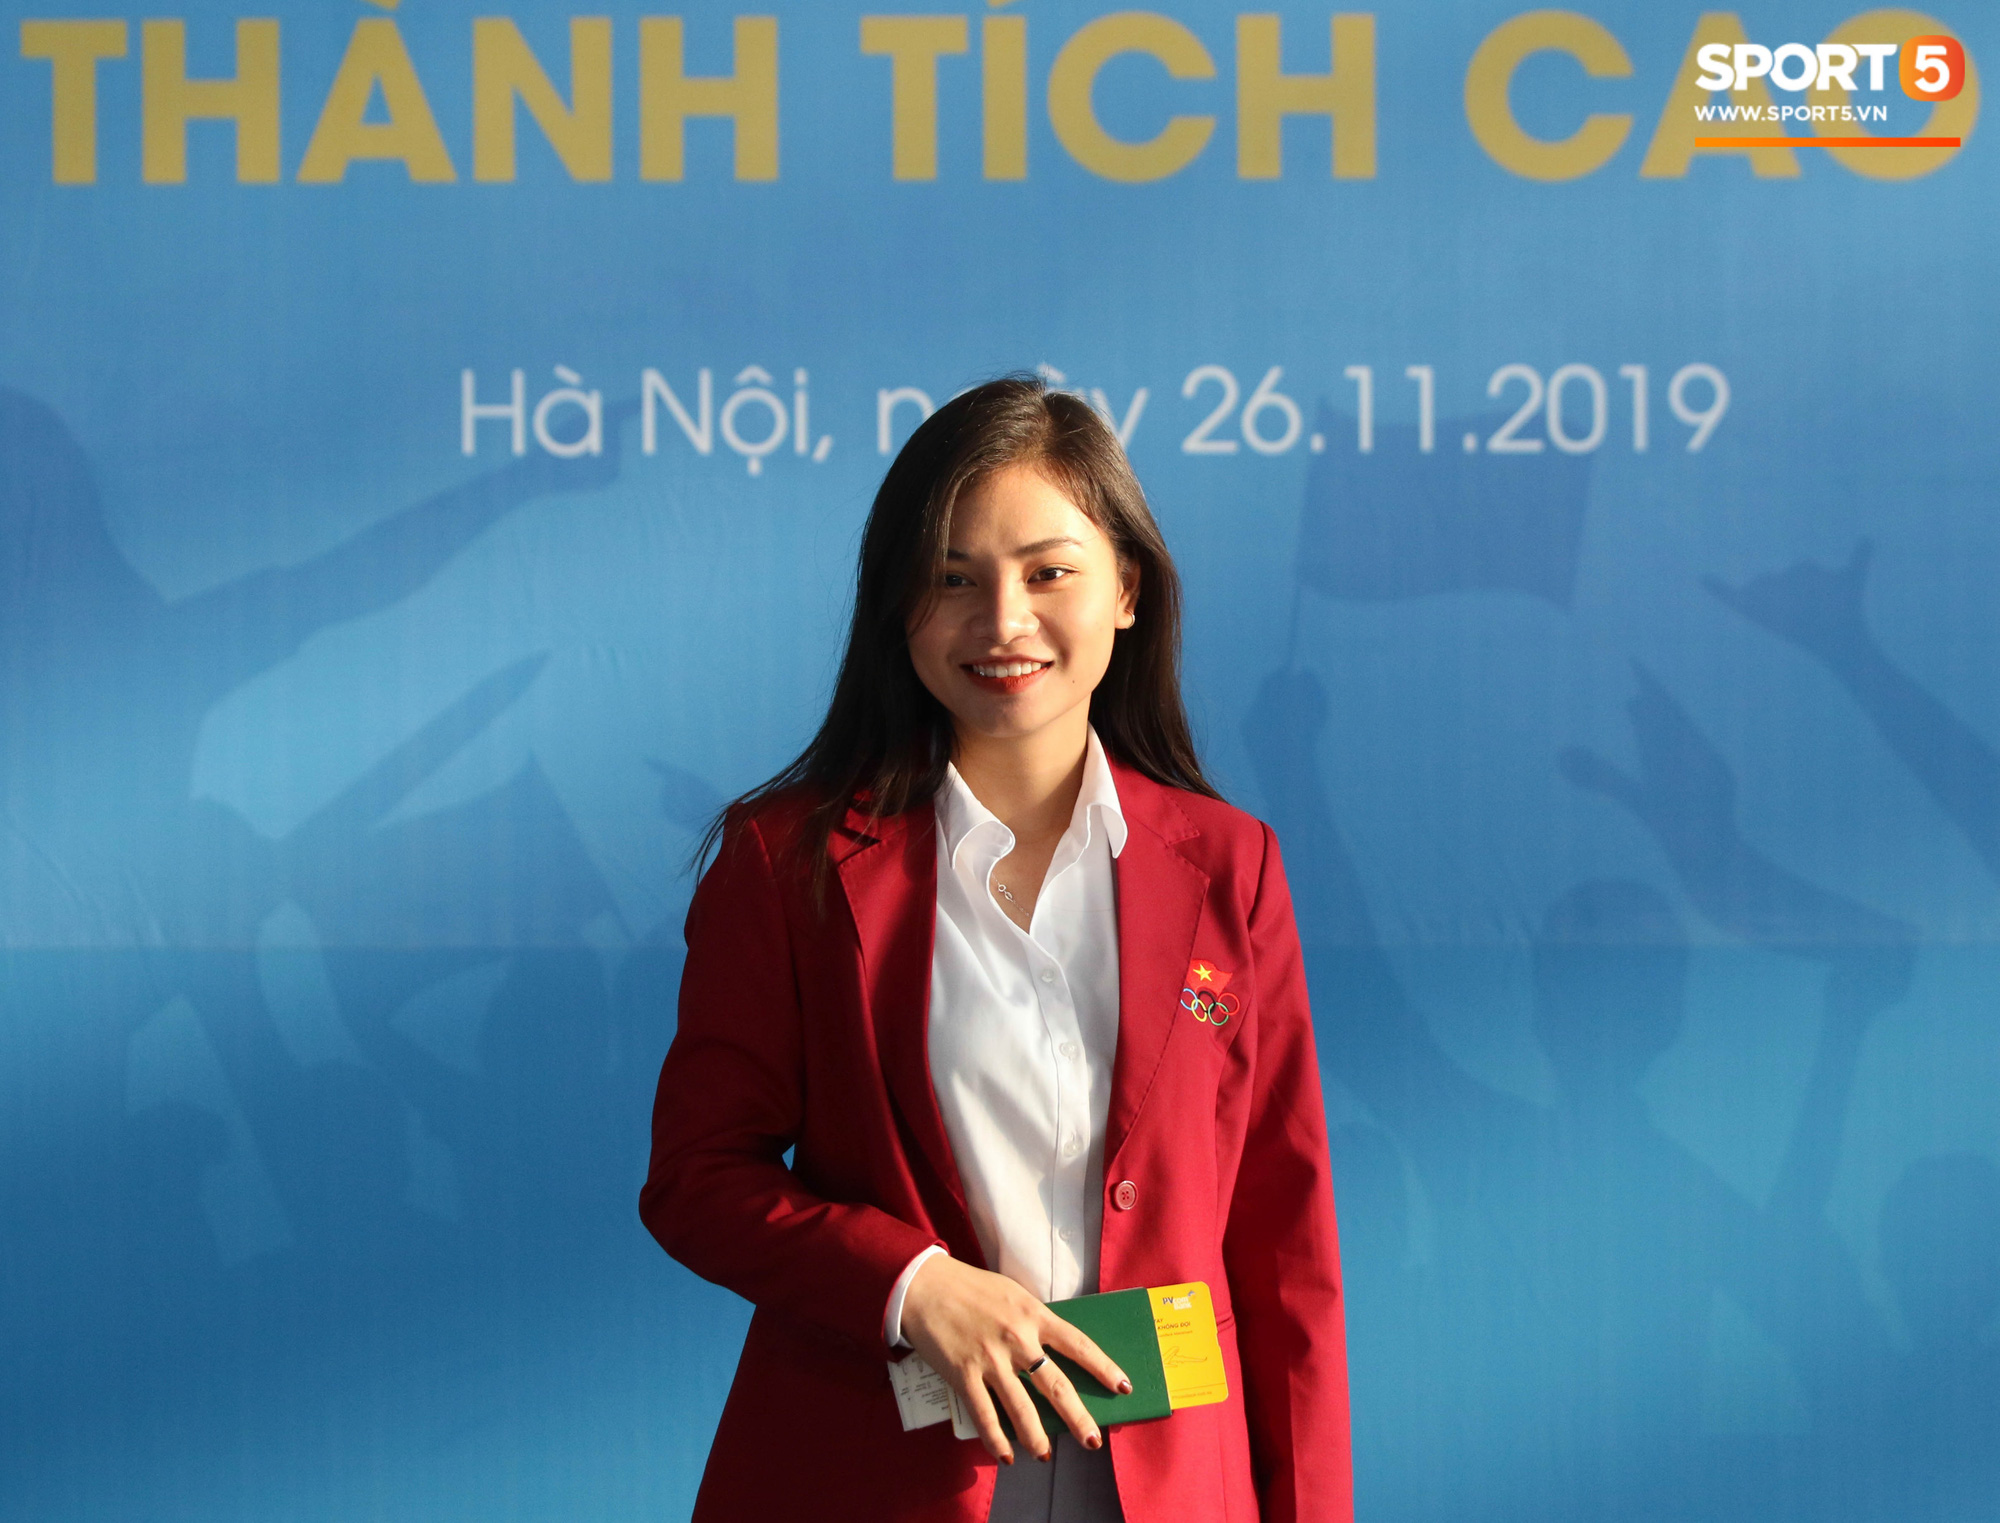 Ngẩn ngơ với nhan sắc như hotgirl của nữ bác sĩ đoàn thể thao Việt Nam dự SEA Games 30 - Ảnh 1.